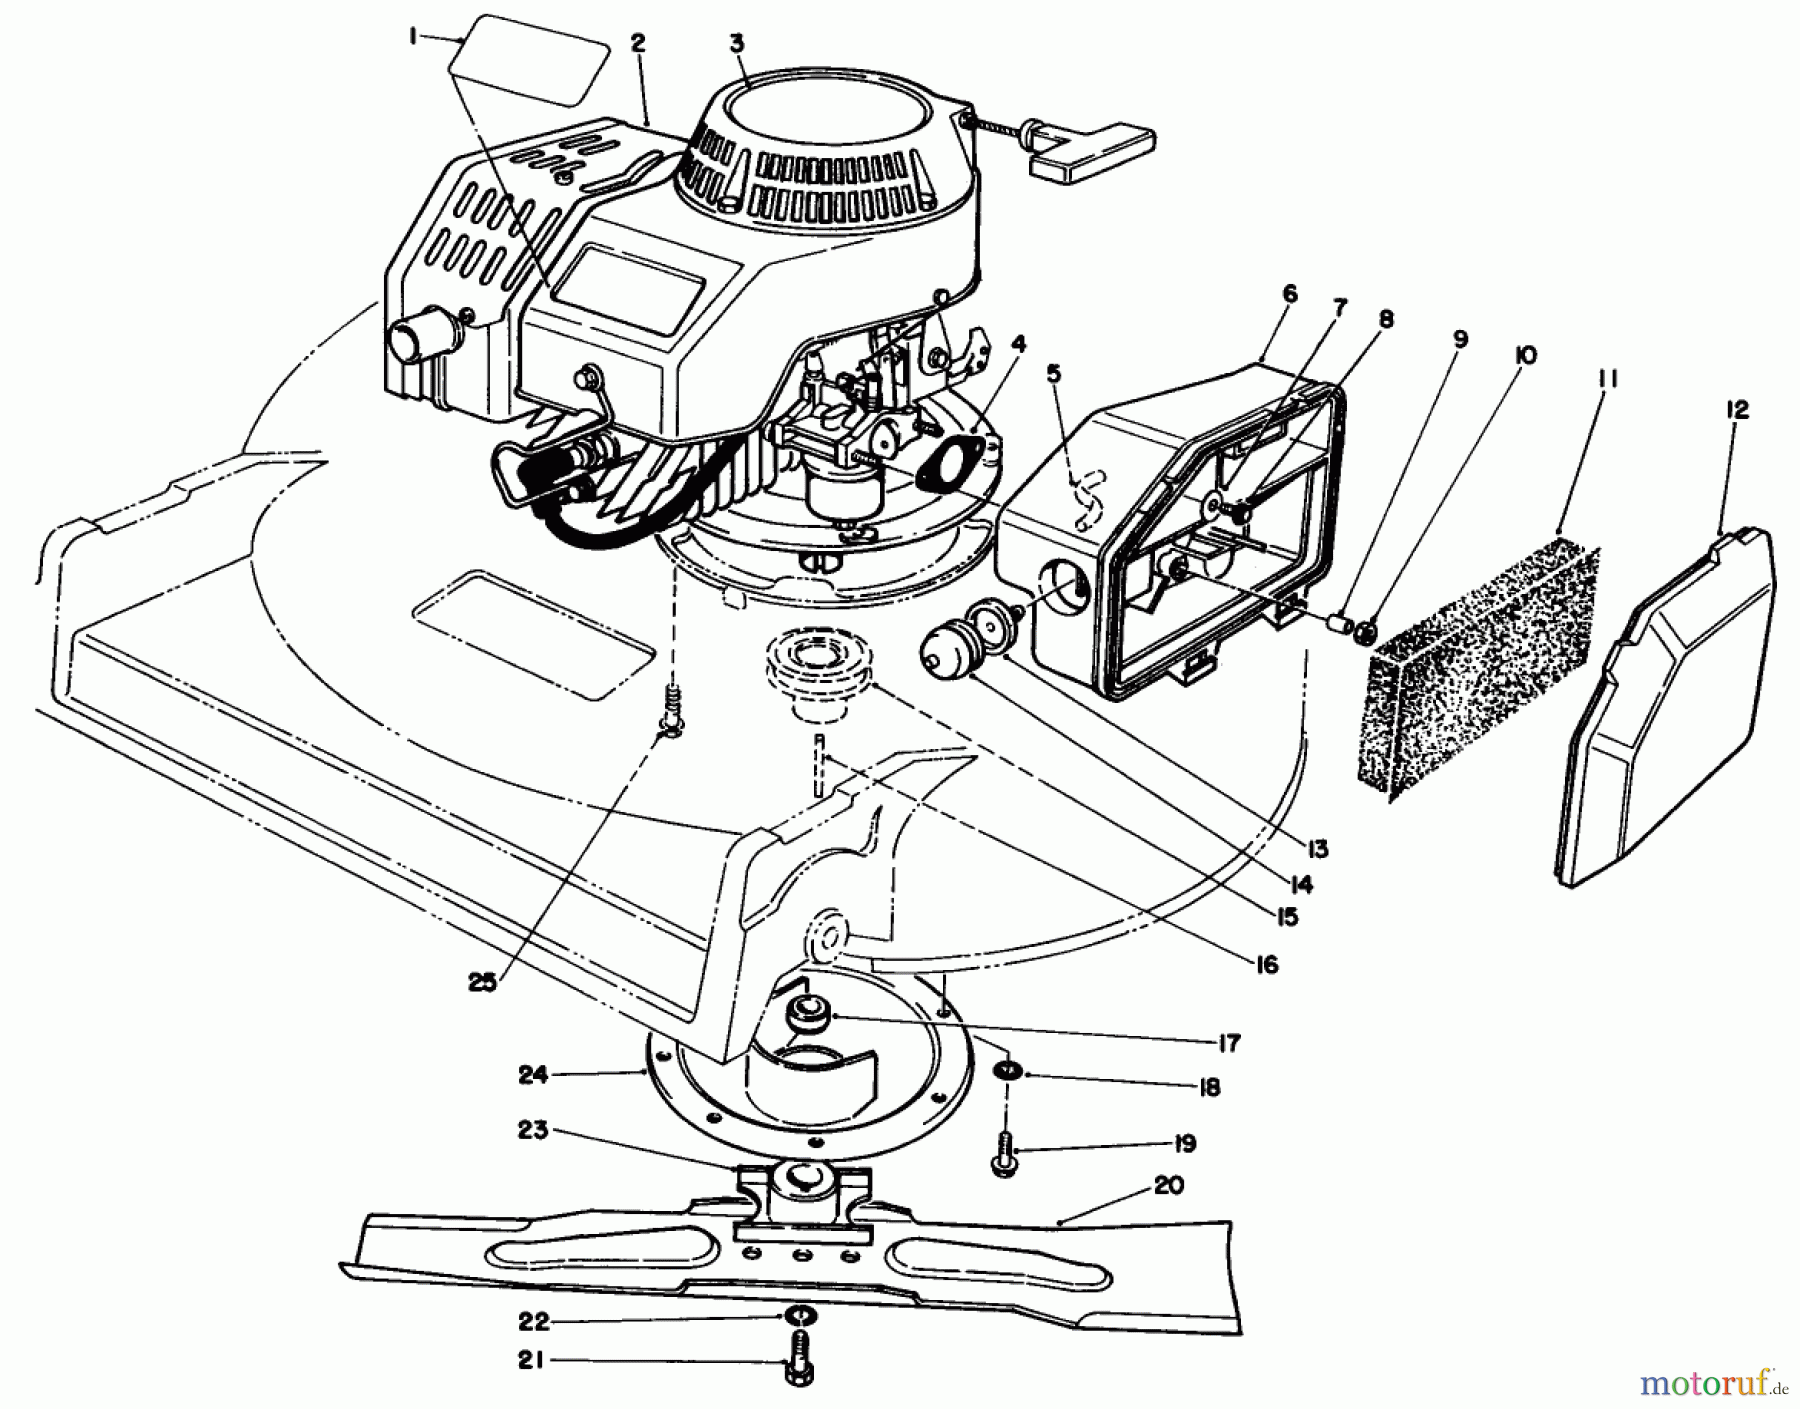  Toro Neu Mowers, Walk-Behind Seite 2 22035 - Toro Lawnmower, 1990 (0000001-0999999) ENGINE ASSEMBLY (MODEL 22035)